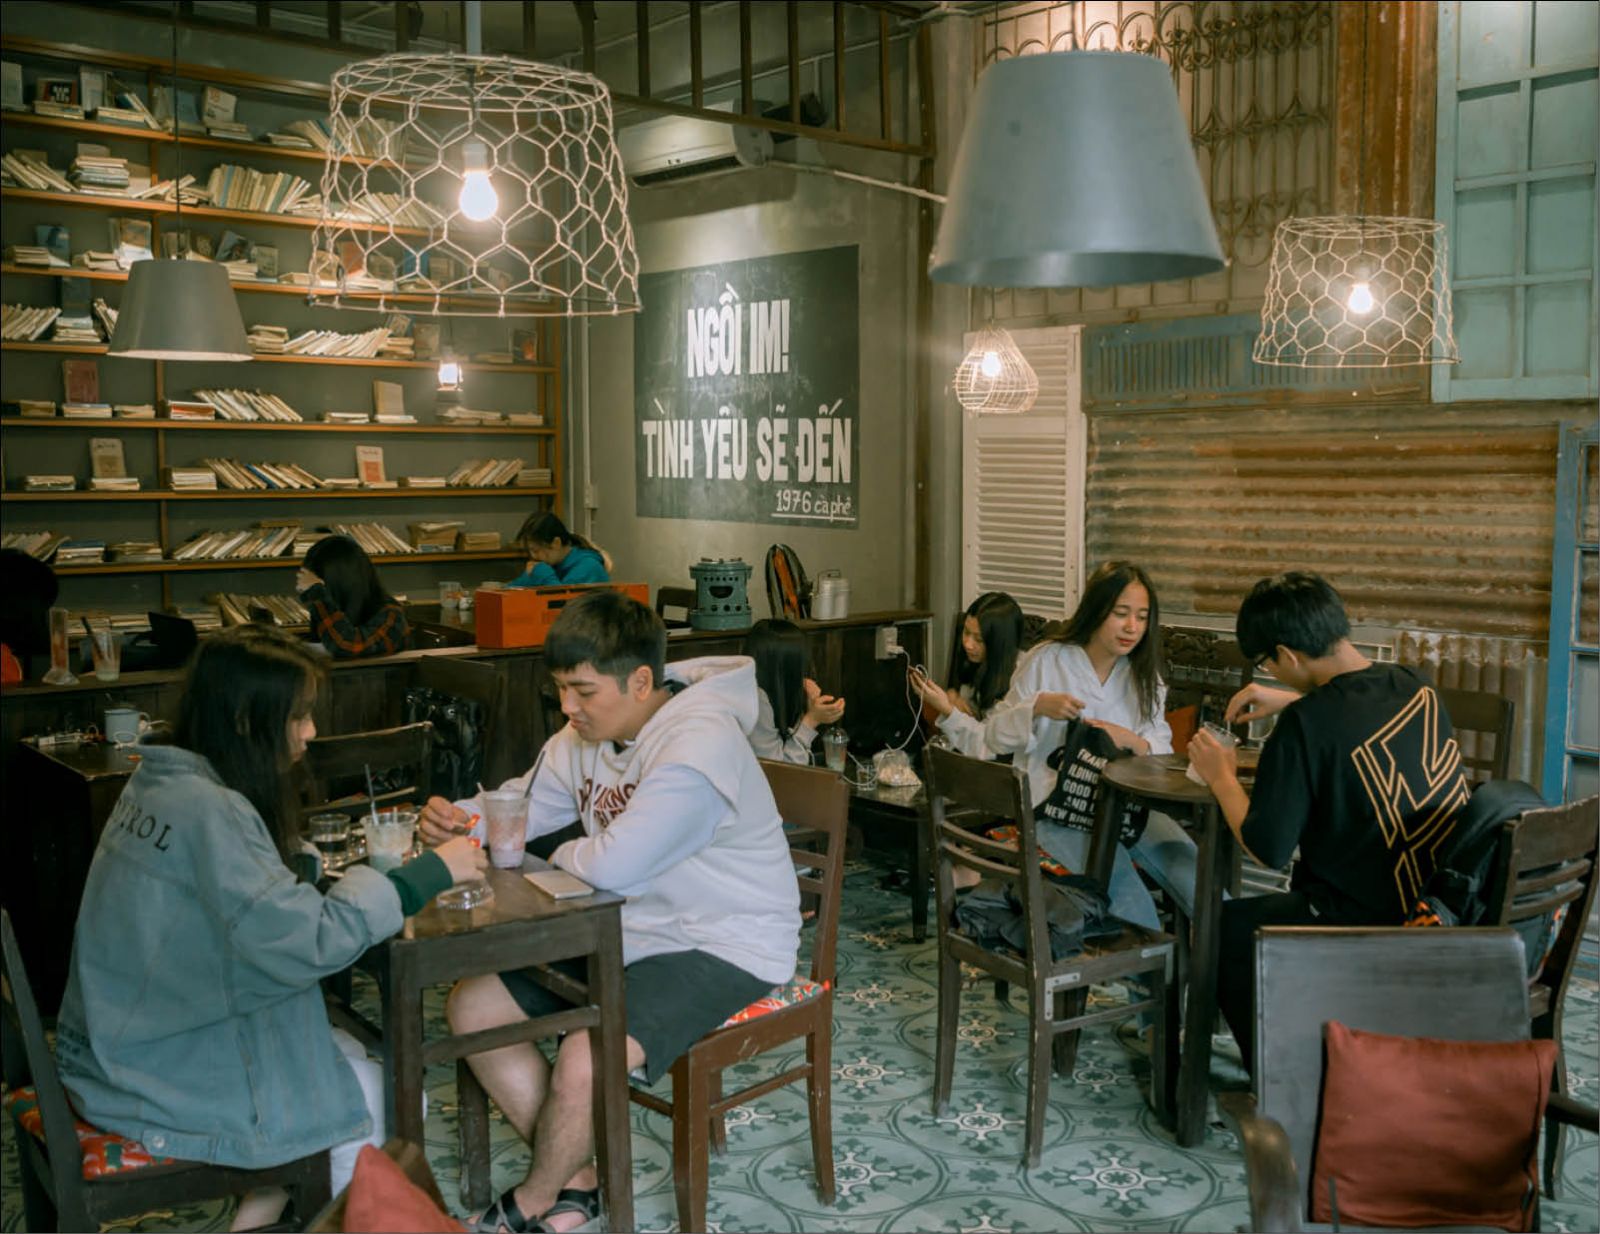 Top 20 quán cafe đẹp ở Huế - Nét độc đáo cho vùng đất Cố Đô 